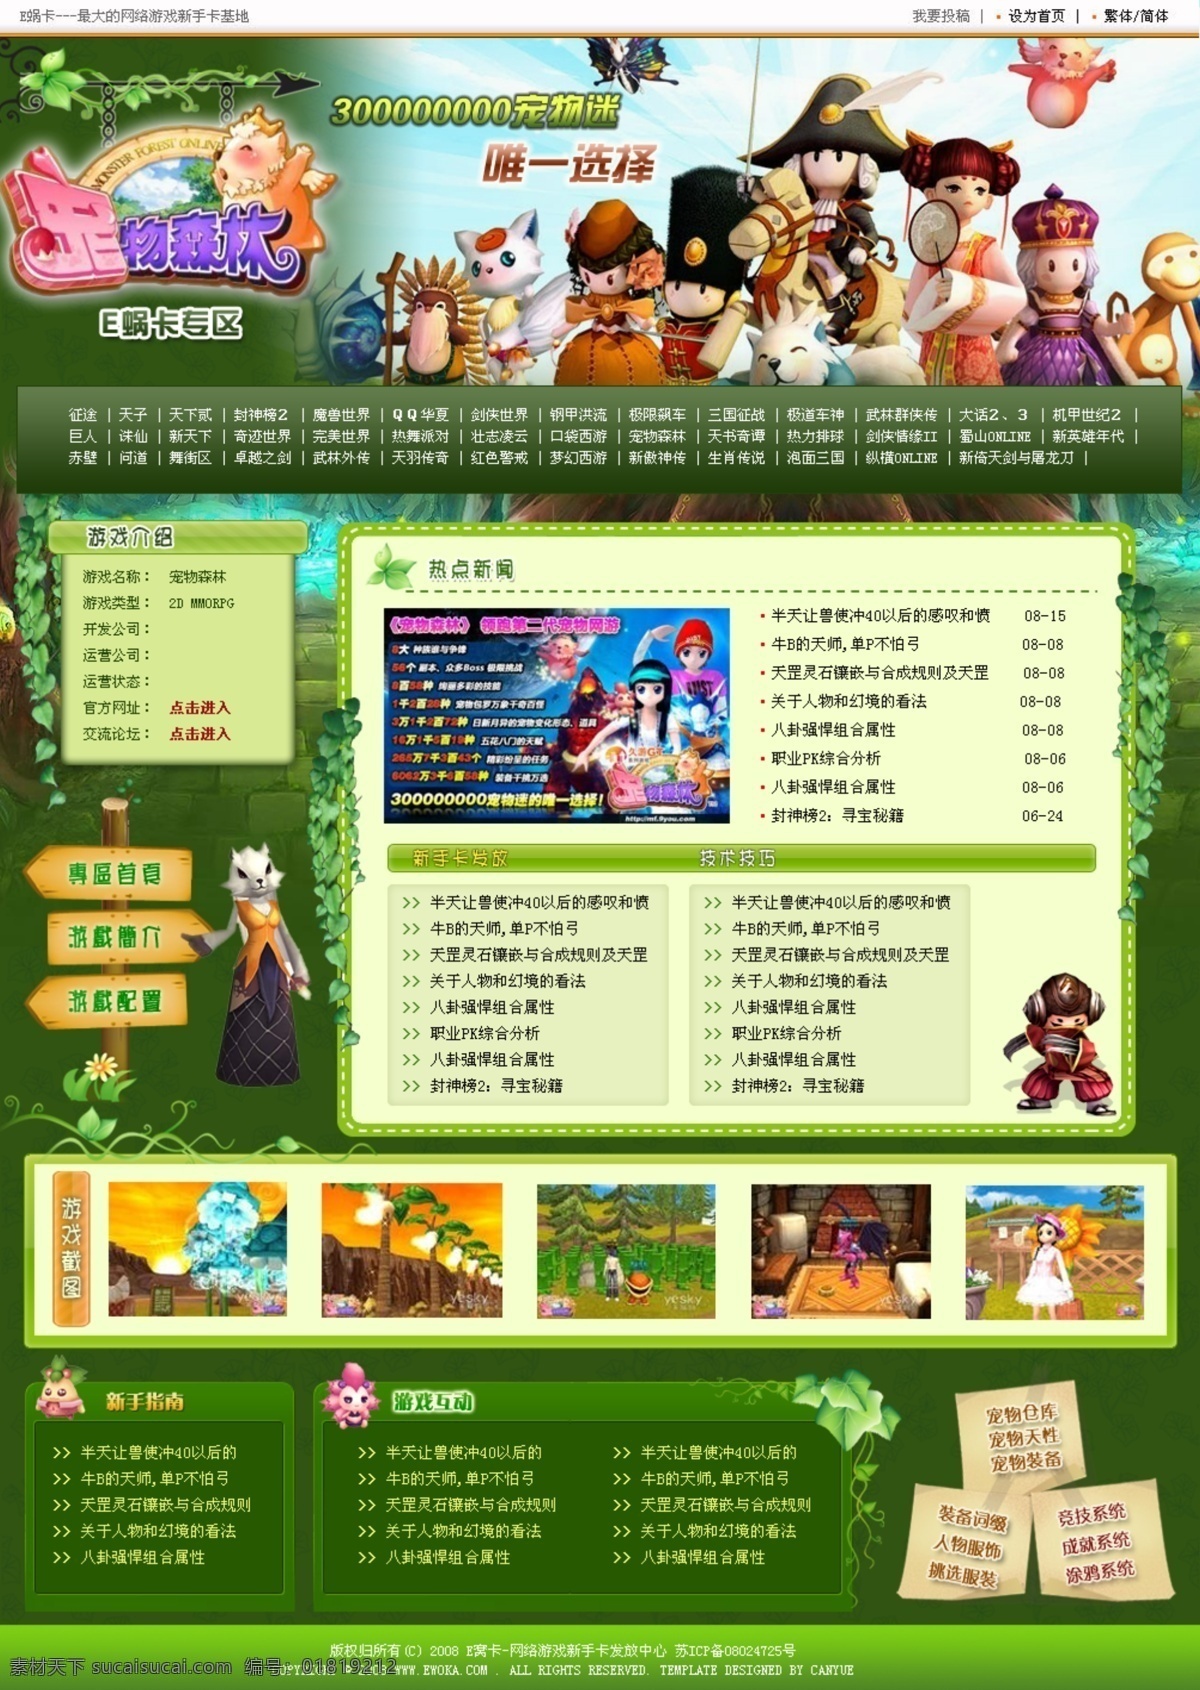 网站 模板 宠物森林 网络游戏 网页模板 网站模板 源文件 中文模版 网游网站模板 矢量图 现代科技